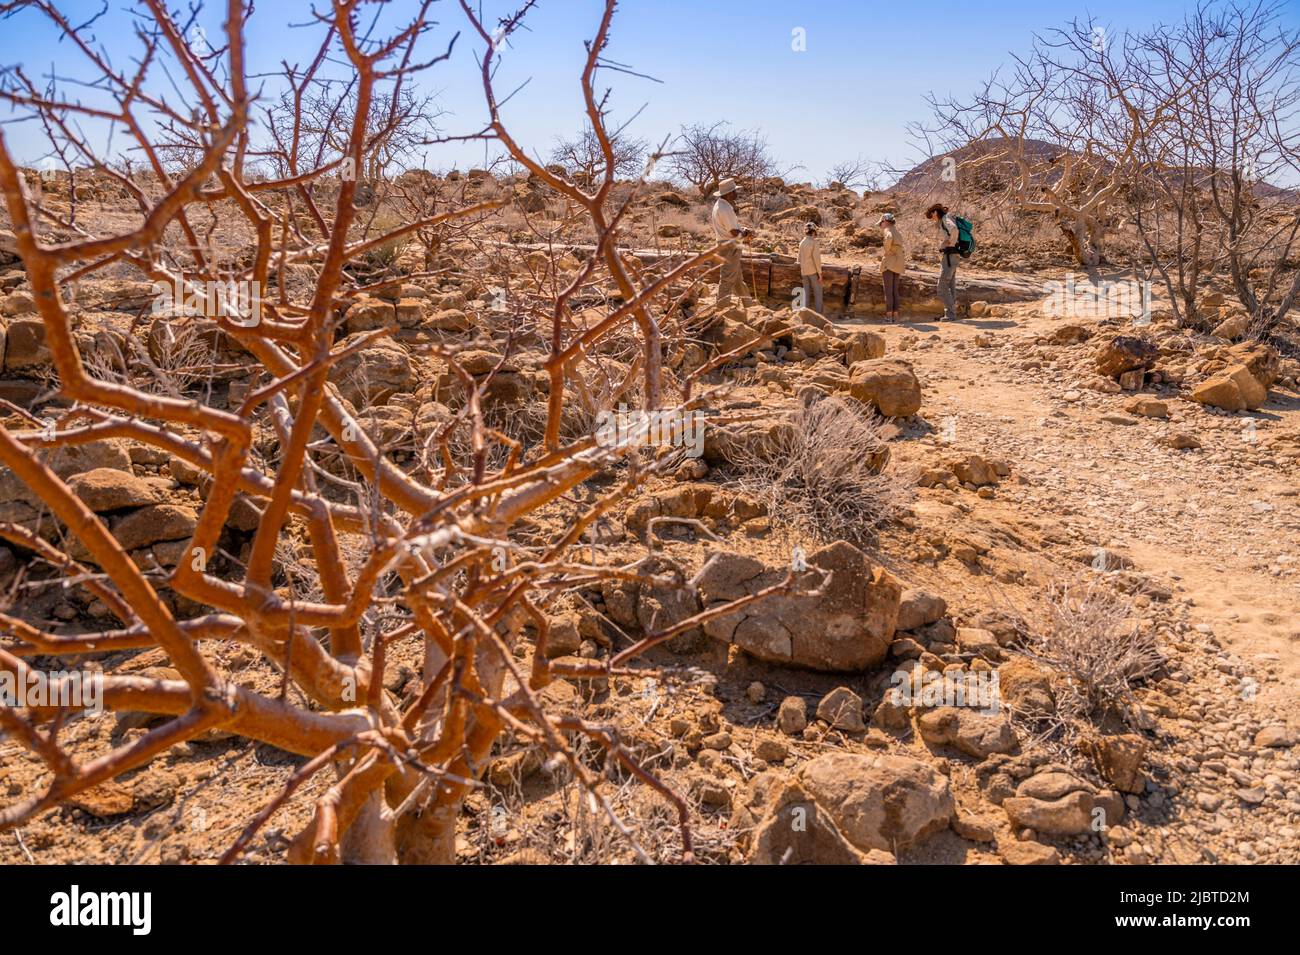 Namibia, Kunene, Damaraland, Khorixas, versteinerte Wälder aus 260 Millionen Jahren, die von der UNESCO zum Weltkulturerbe erklärt wurden Stockfoto